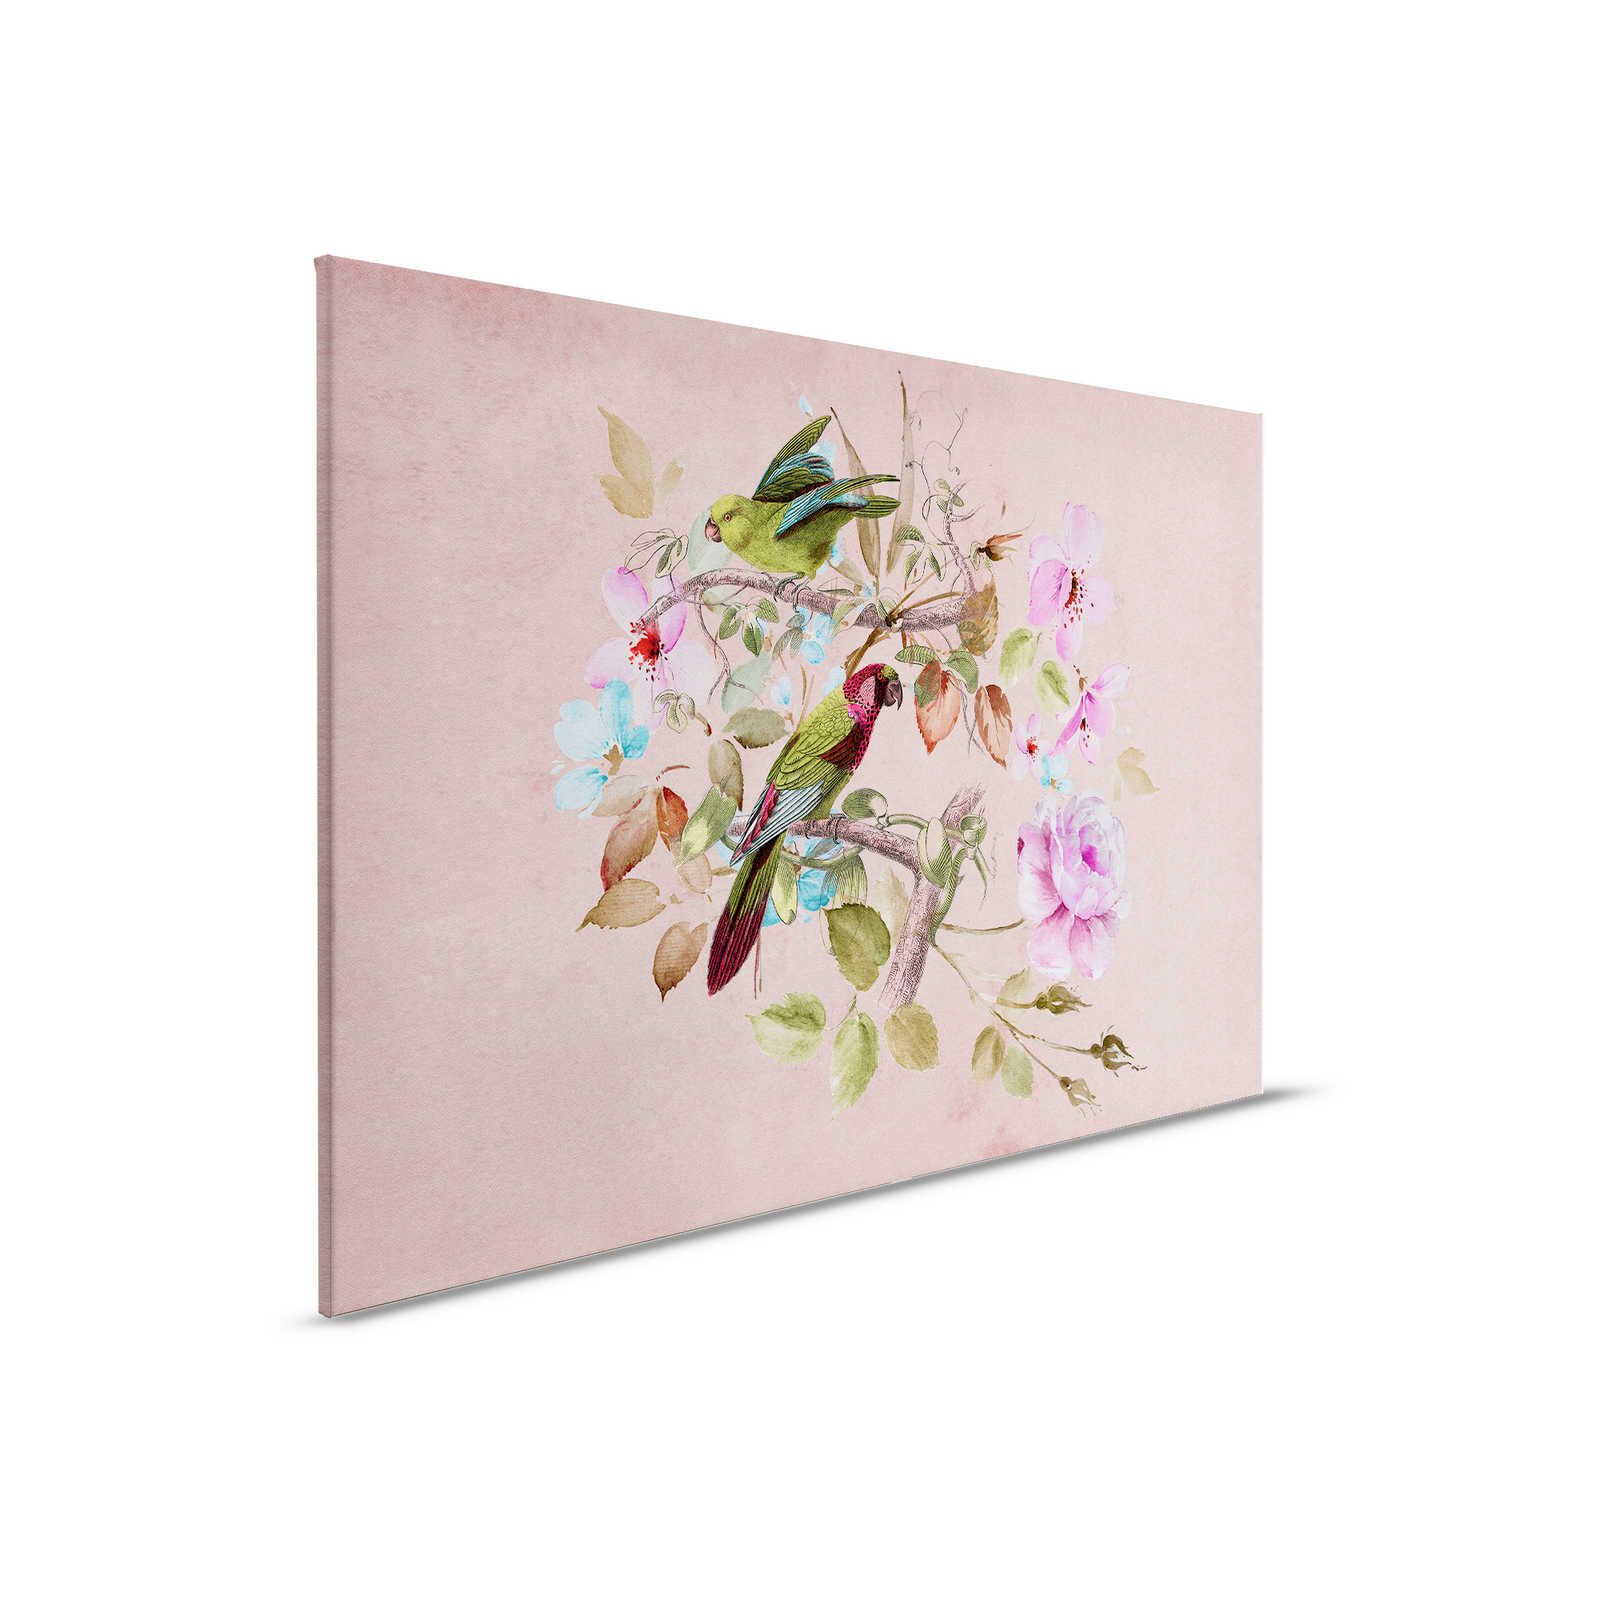 Nido d'amore 2 - Quadro su tela vintage con fiori e uccelli colorati all'acquerello - 0,90 m x 0,60 m
